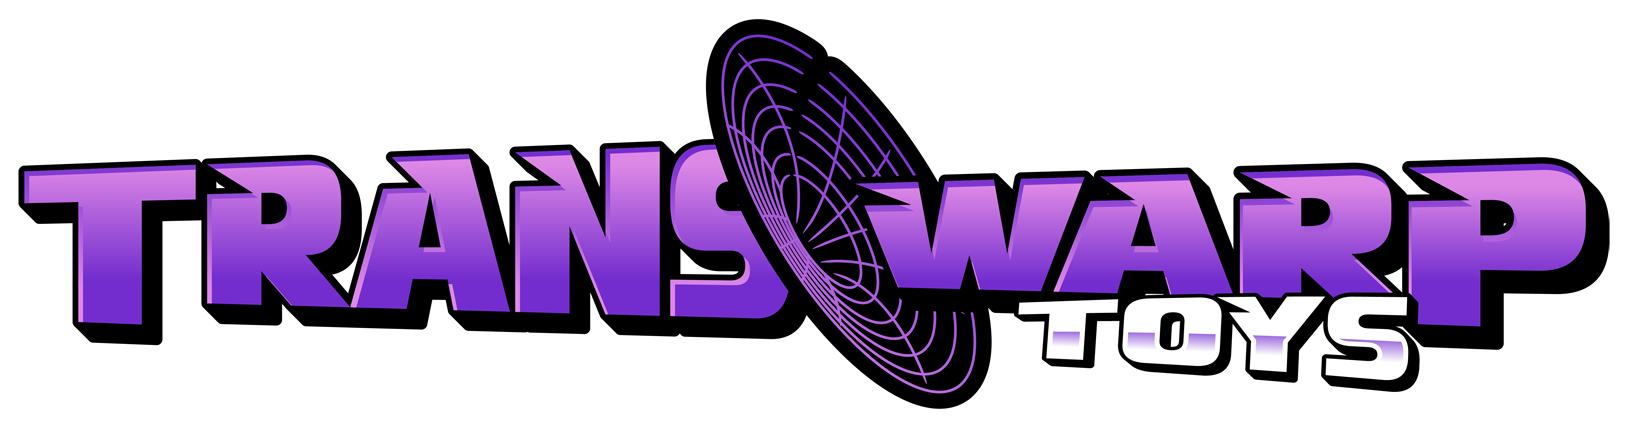 logo - Transwarp Toys